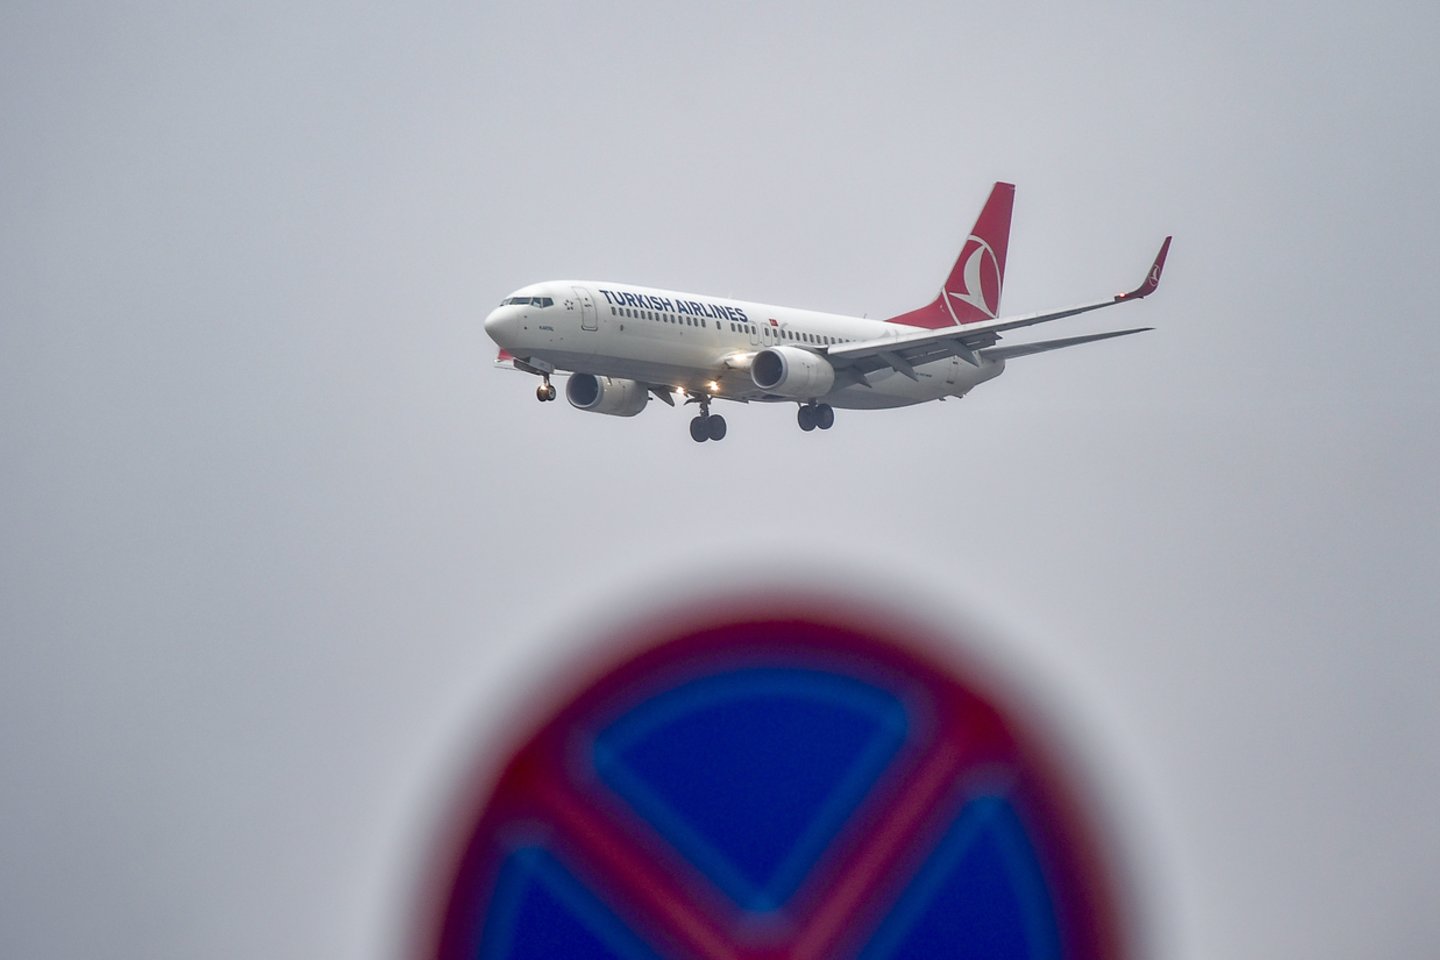 Turkijos skrydžių bendrovė „Turkish Airlines“ atnaujina skrydžius tarp Vilniaus ir Stambulo. Skrydžiai atnaujinami, nuo spalio 12 dienos Lietuvos piliečiams nebetaikant saviizoliacijos nei Turkijoje, nei Lietuvoje.<br>V.Ščiavinsko nuotr.